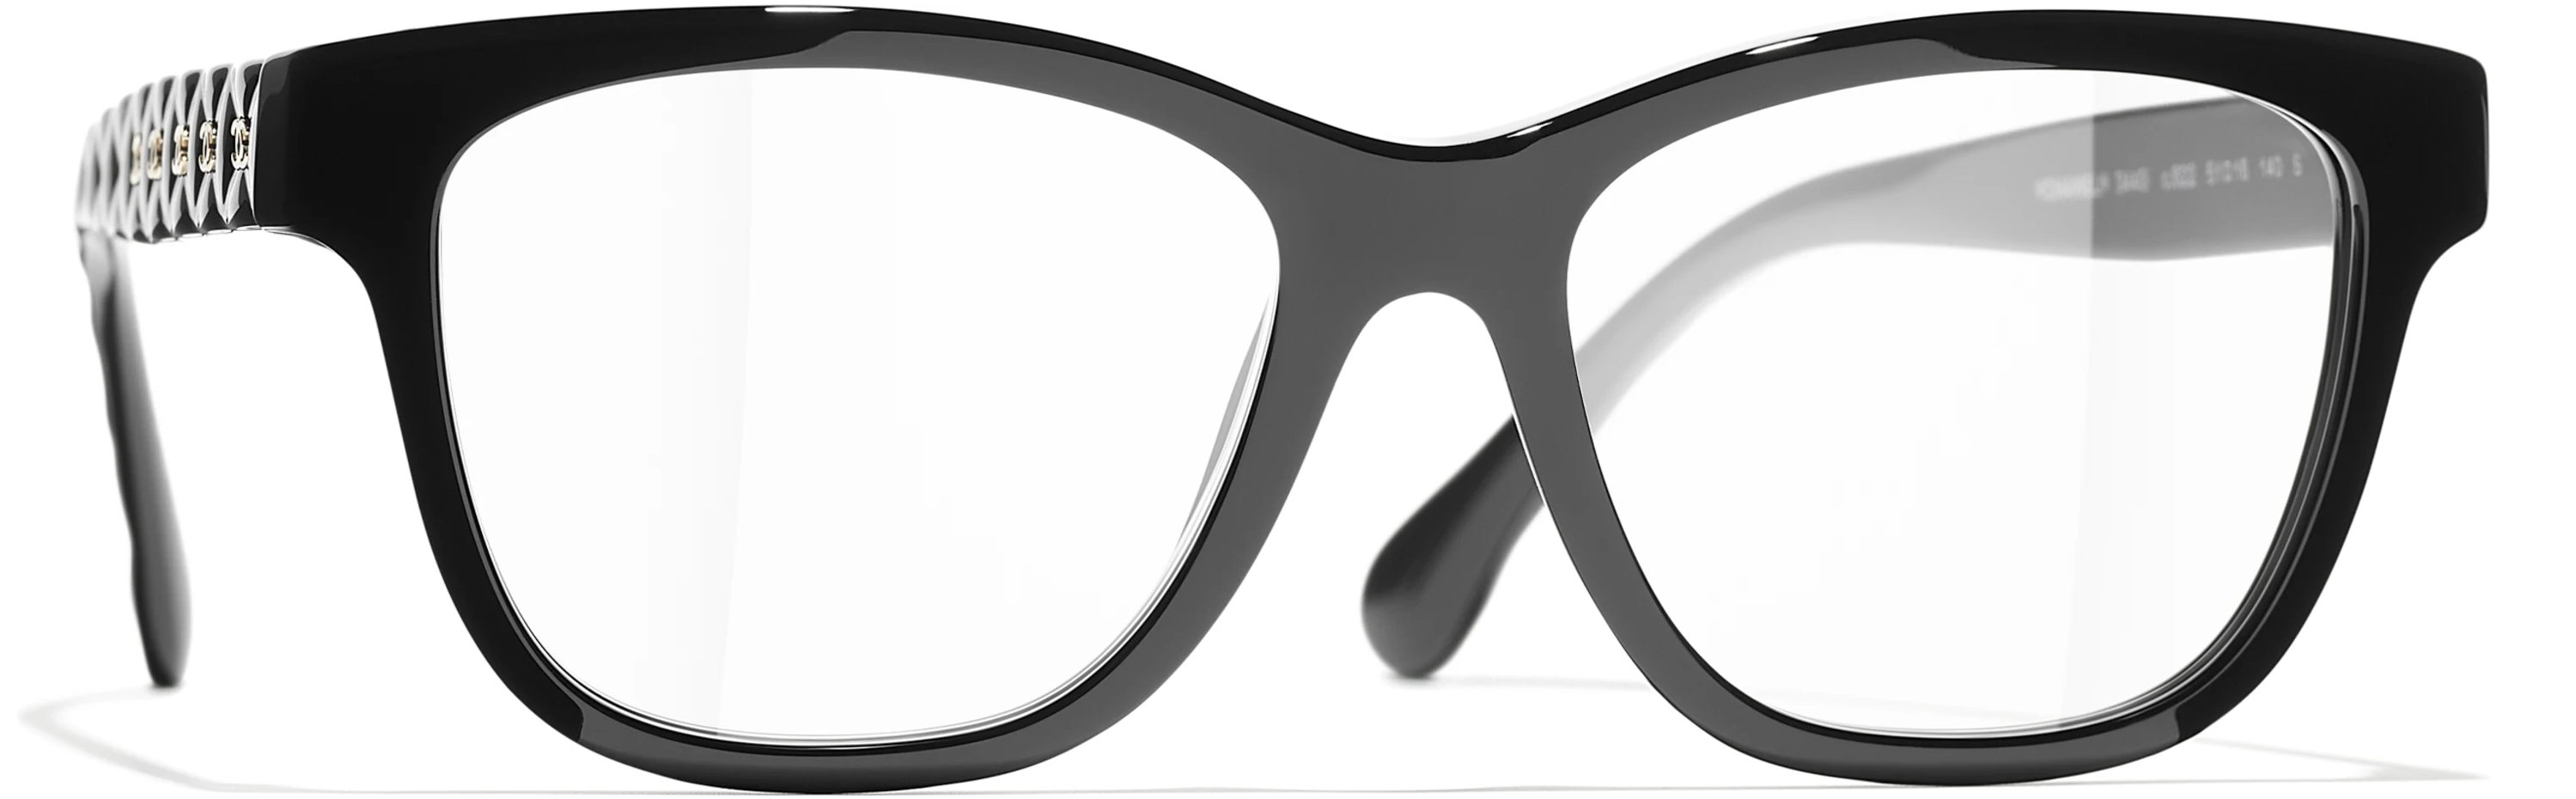 新品未使用品シャネルメガネフレーム3353 - サングラス/メガネ